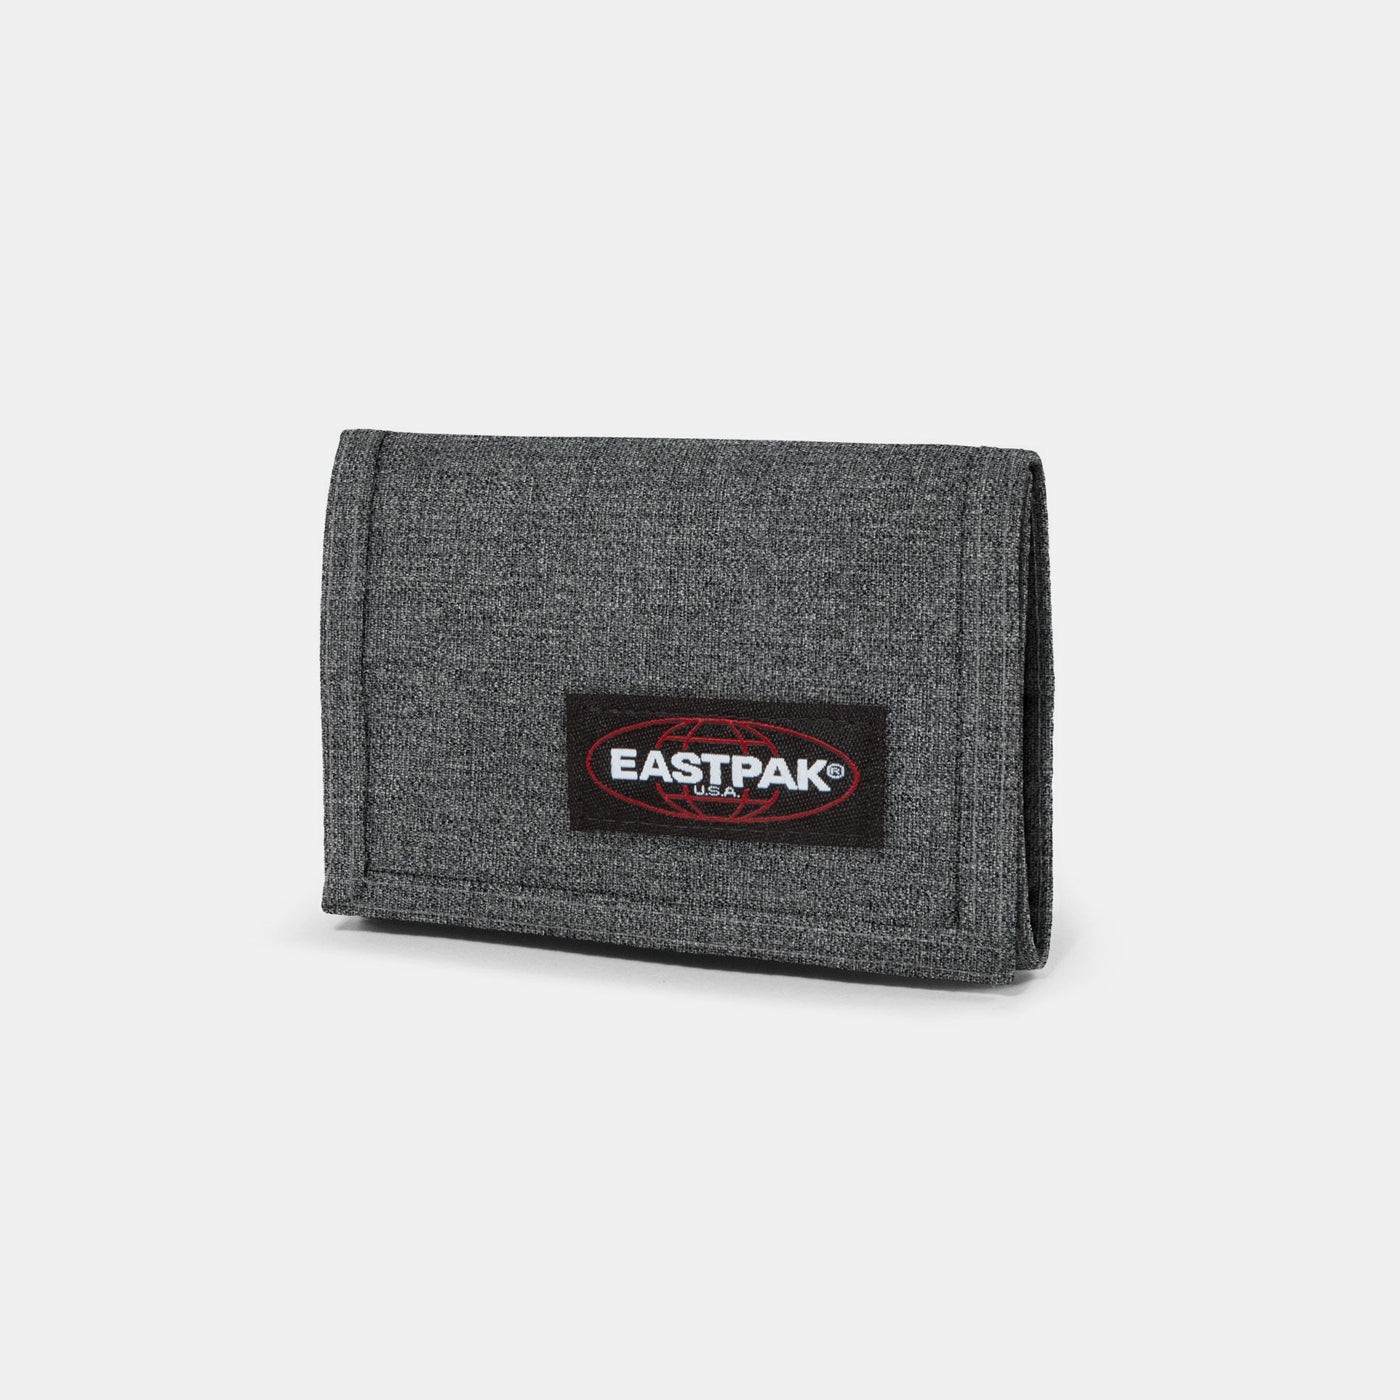 Eastpak wallet